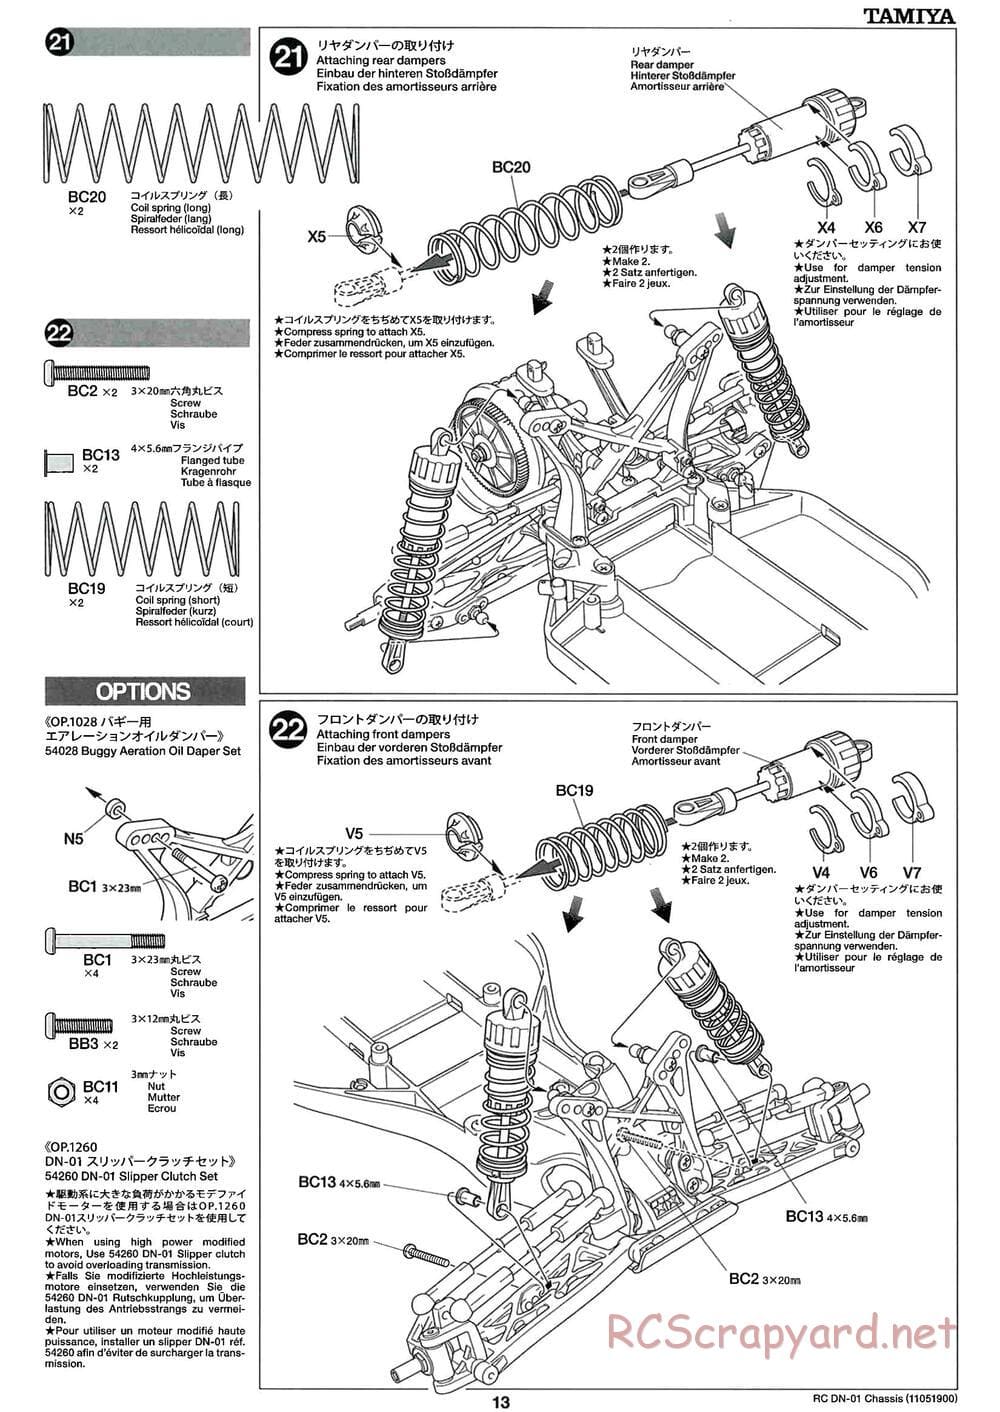 Tamiya - DN-01 Chassis - Manual - Page 13